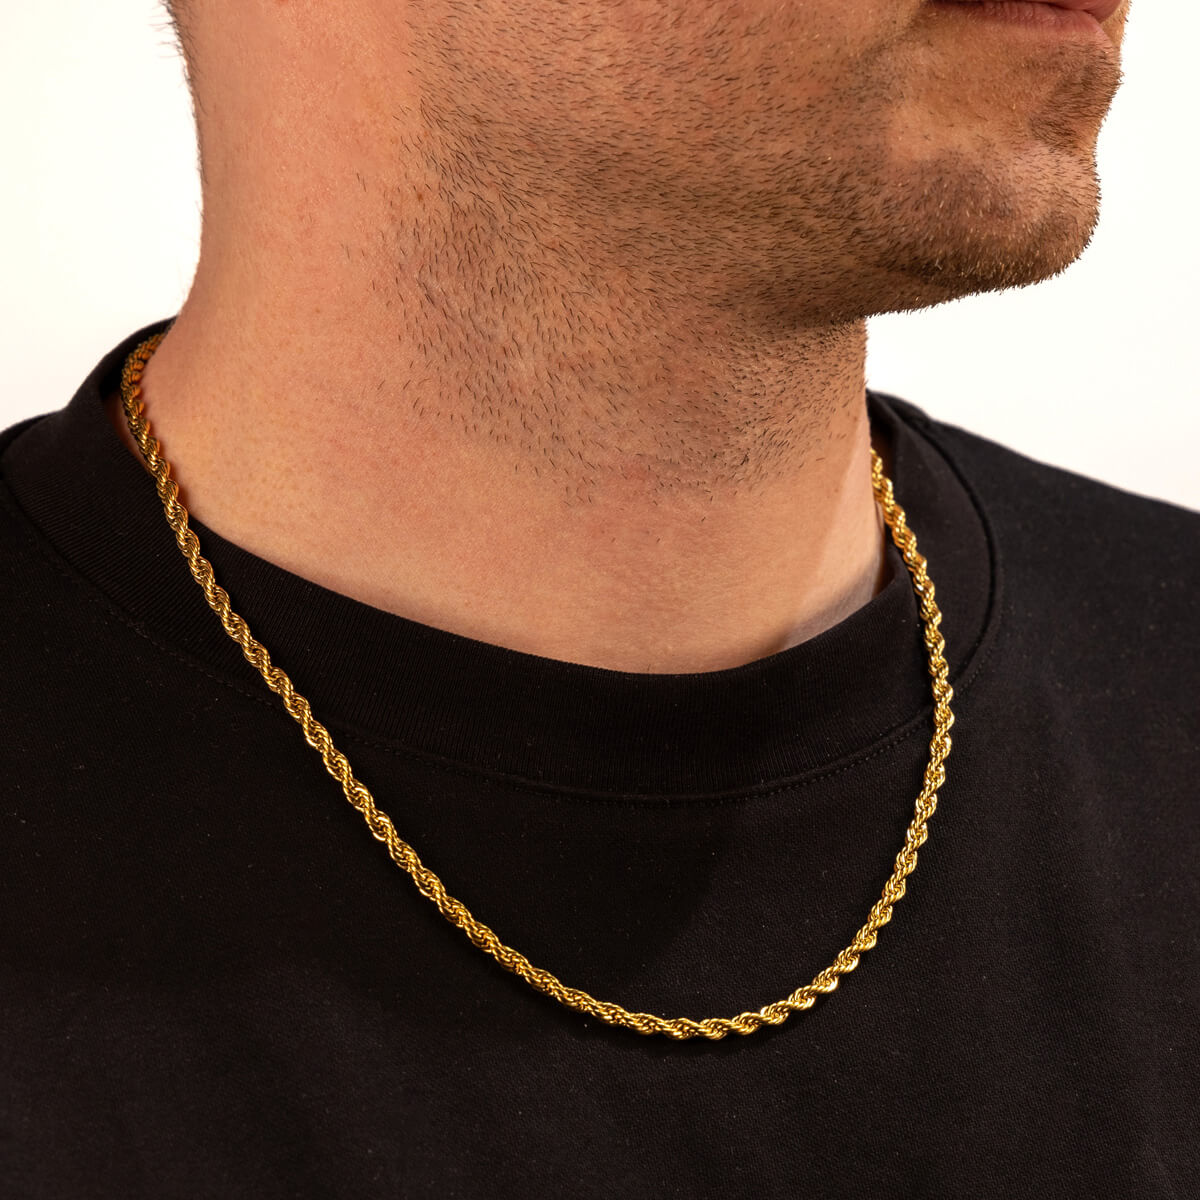 Rope chain steel cordeliaketju necklace 4mm 56cm